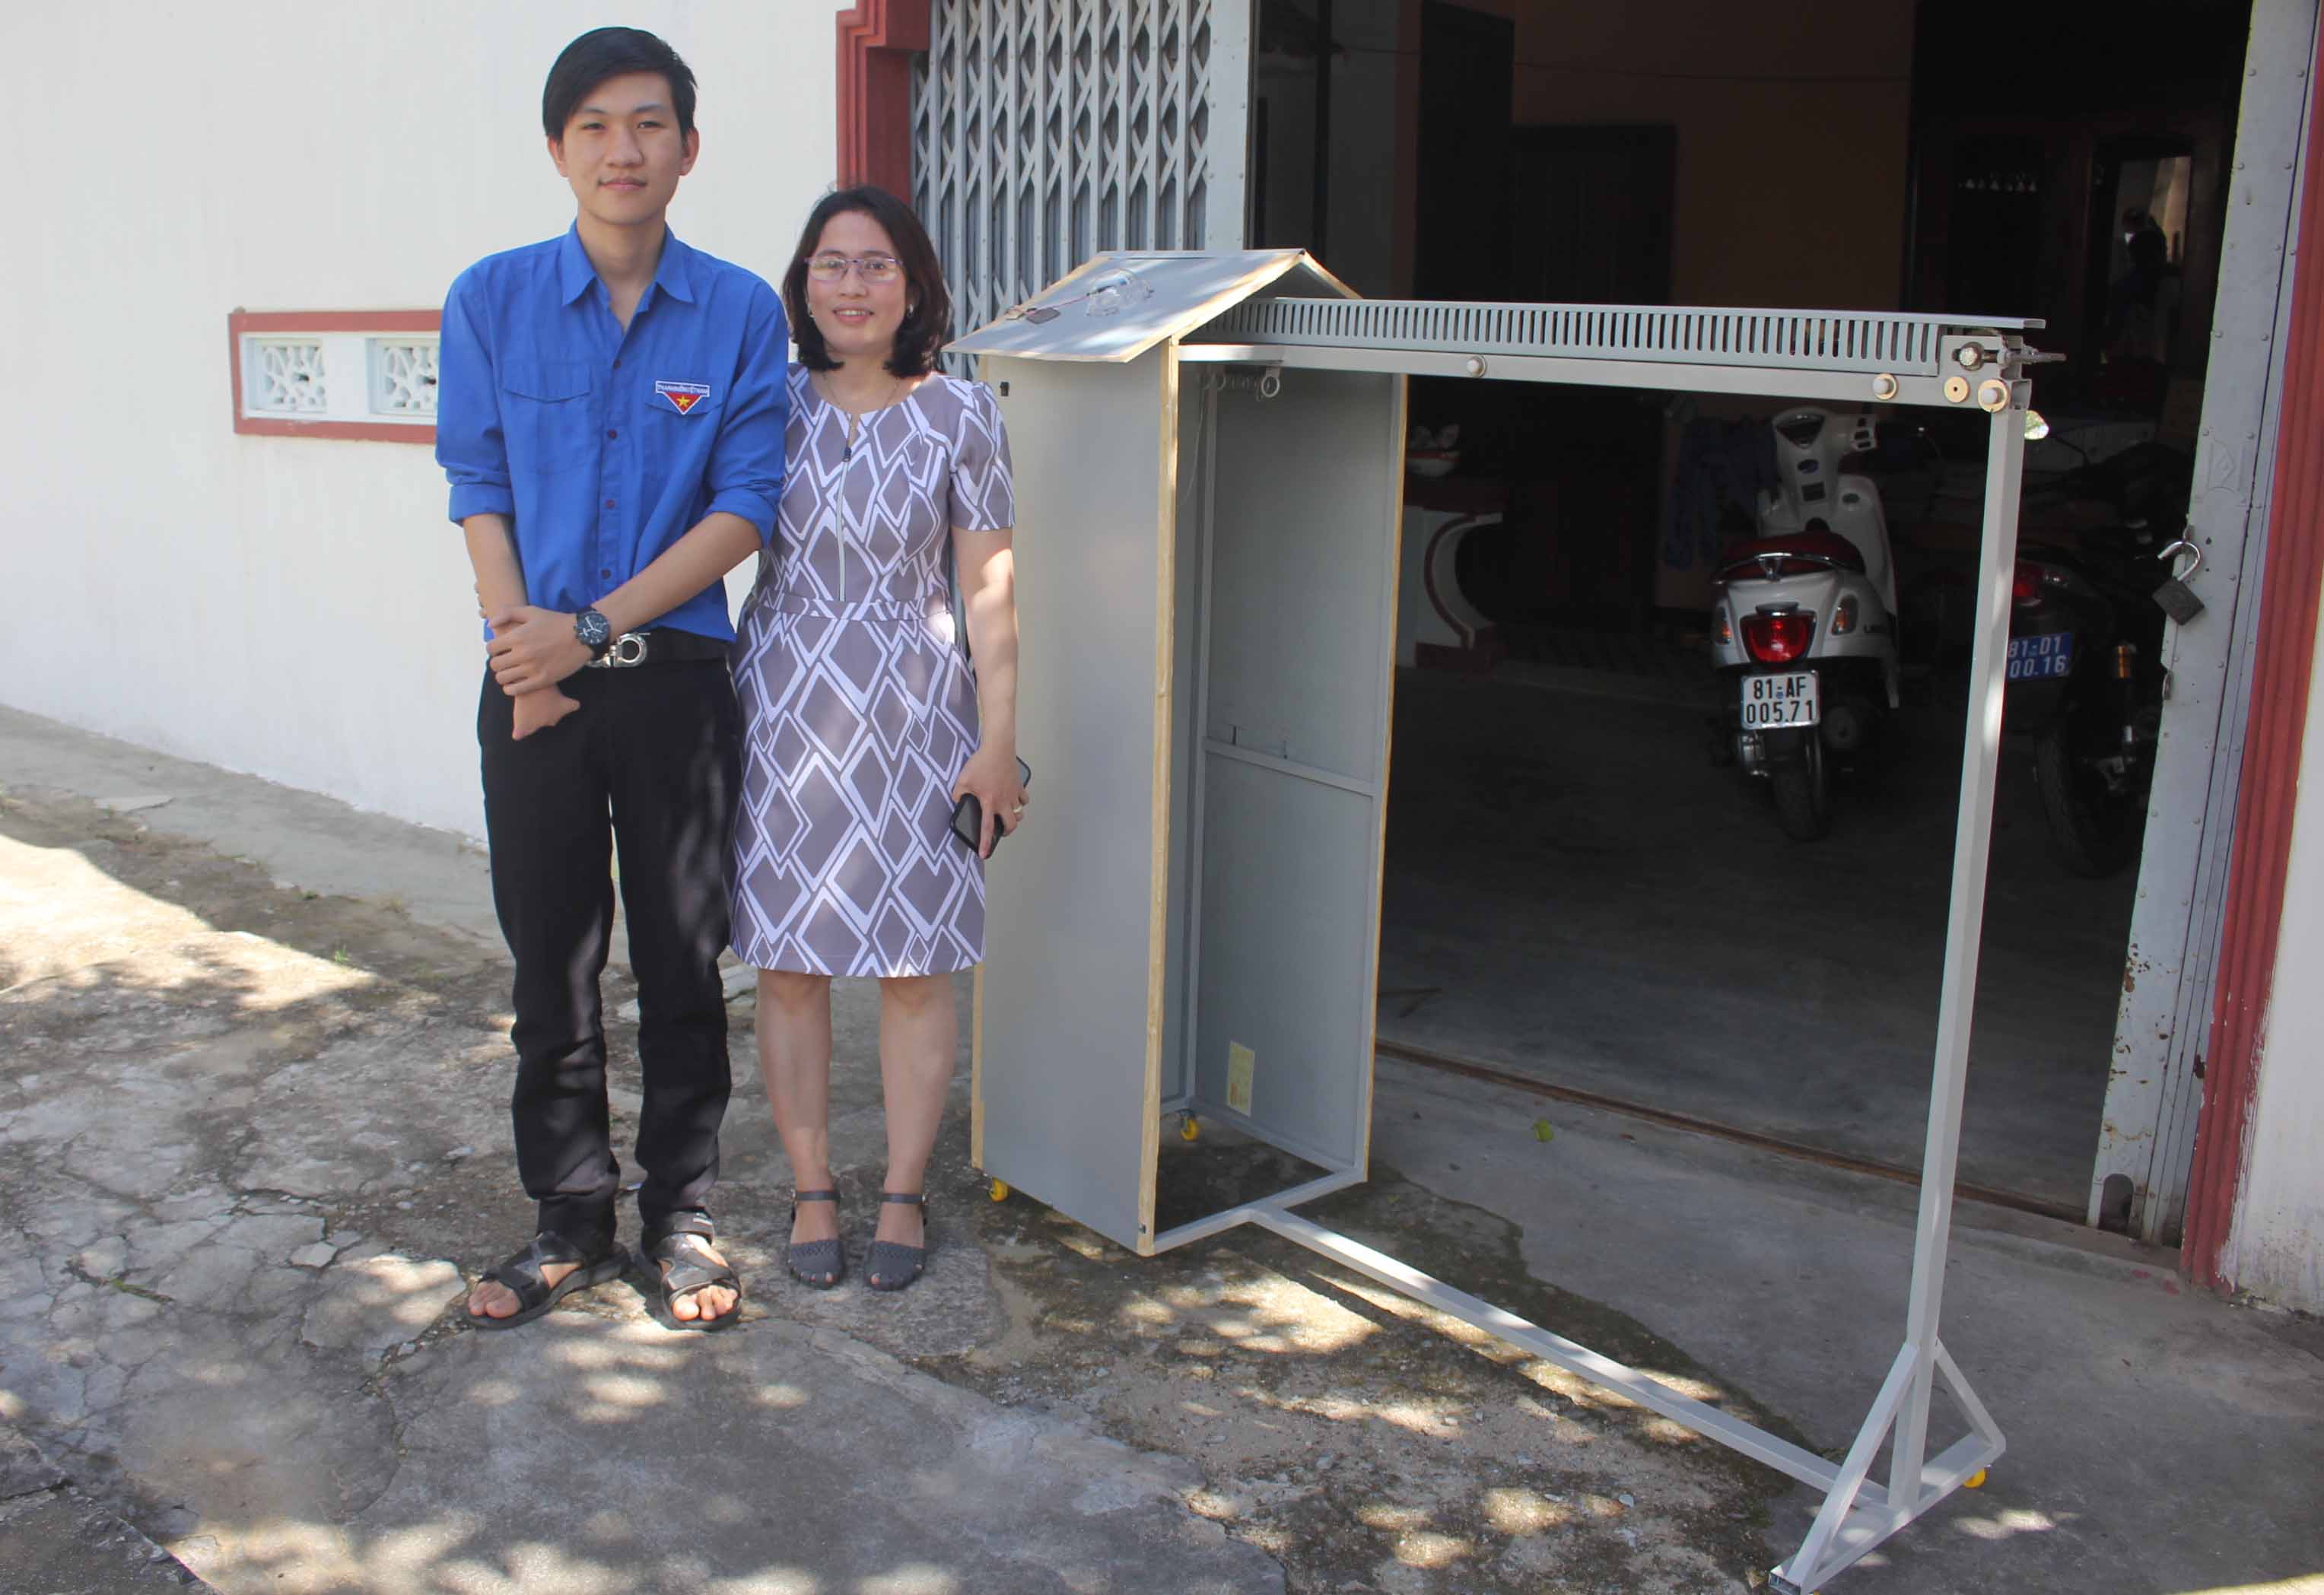   Em Trần Kế Tuấn Vương và cô giáo Tạ Thị Hạnh bên chiếc máy phơi đồ.  Ảnh: H.S